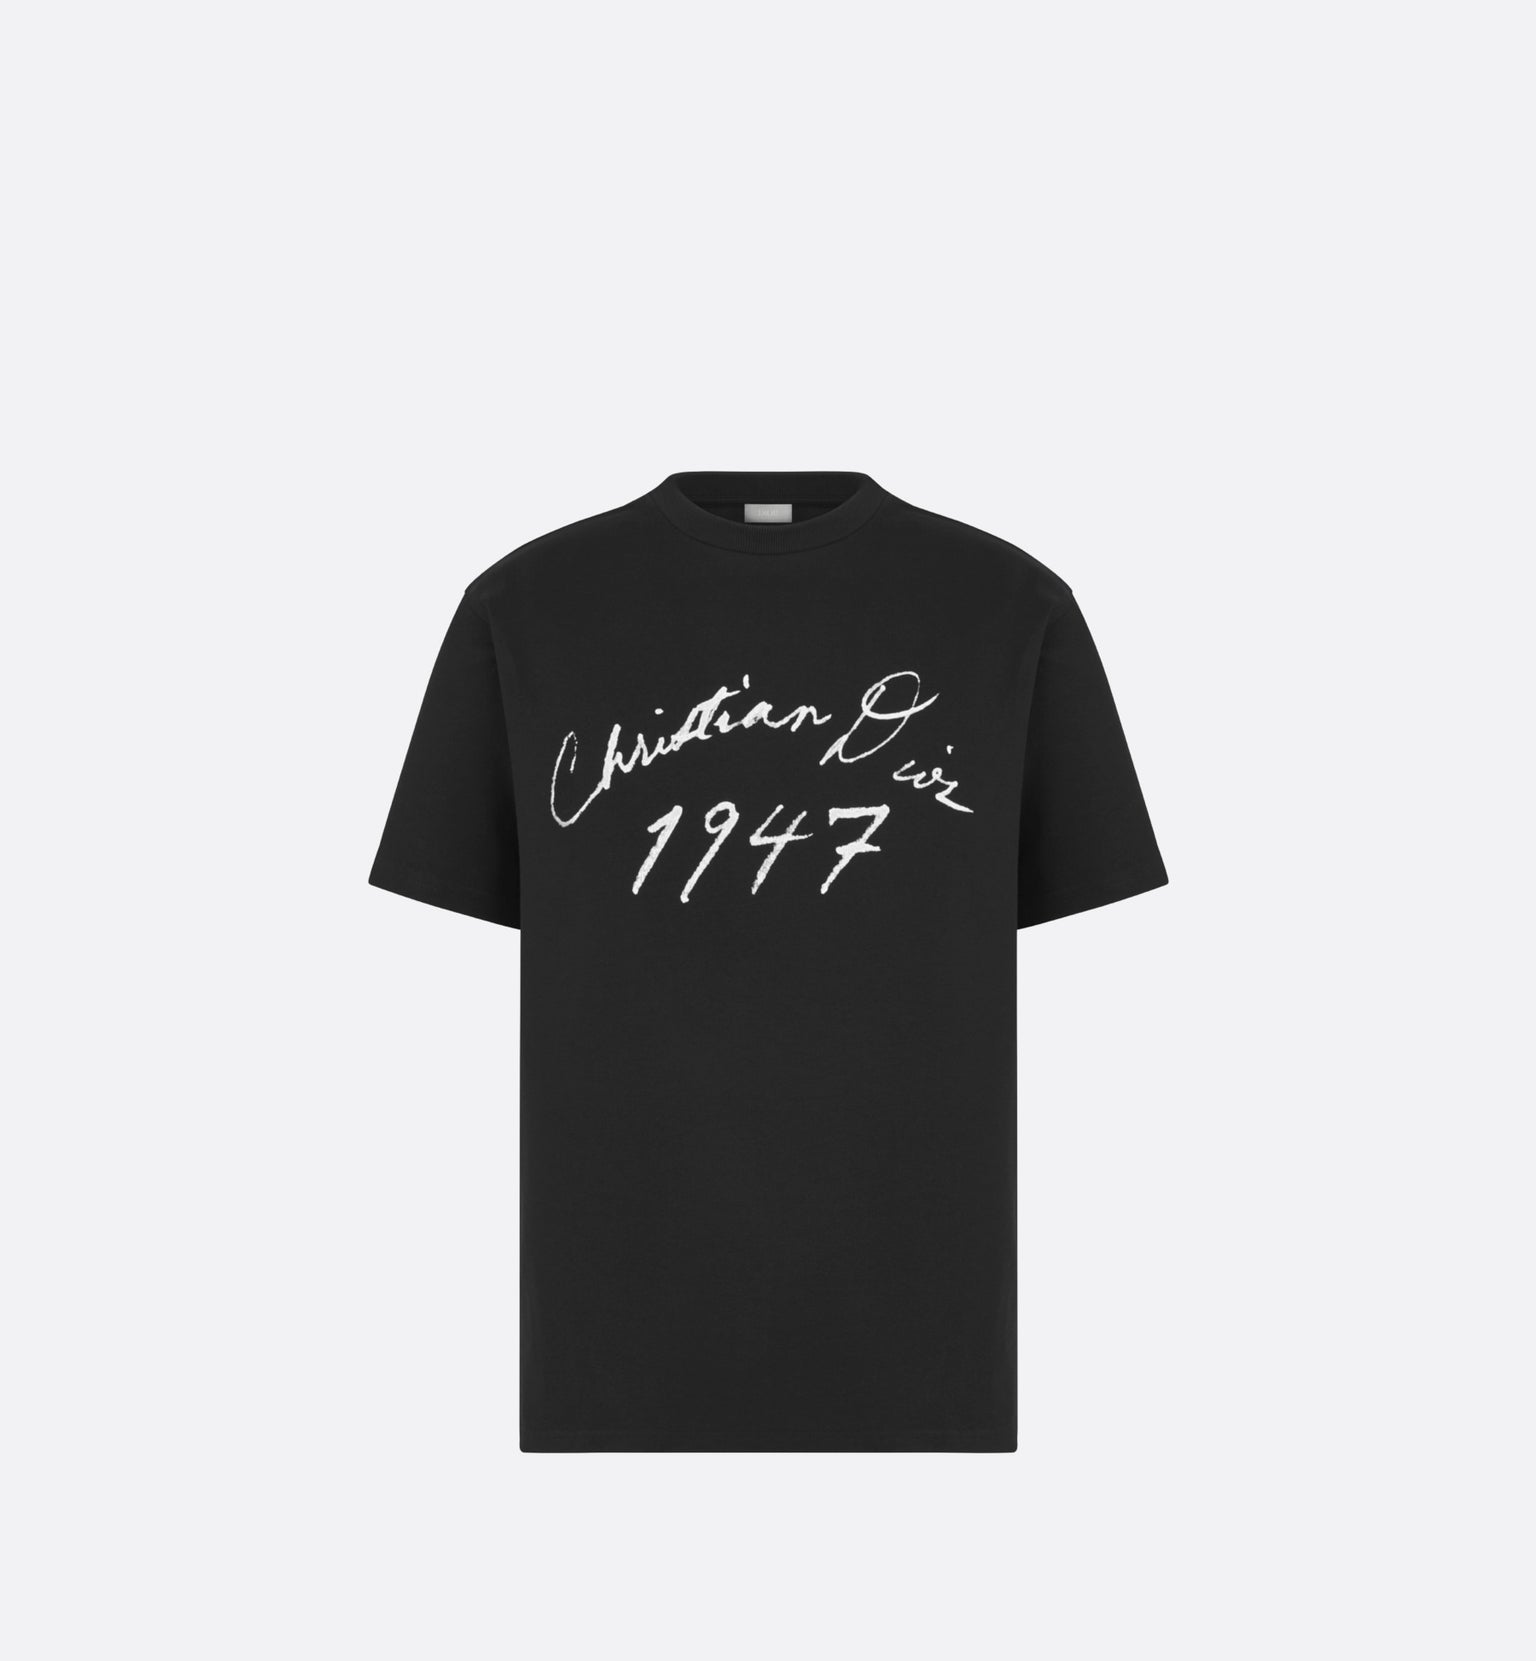 Handwritten Christian Dior Relaxed-Fit T-Shirt • Black Cotton Jersey